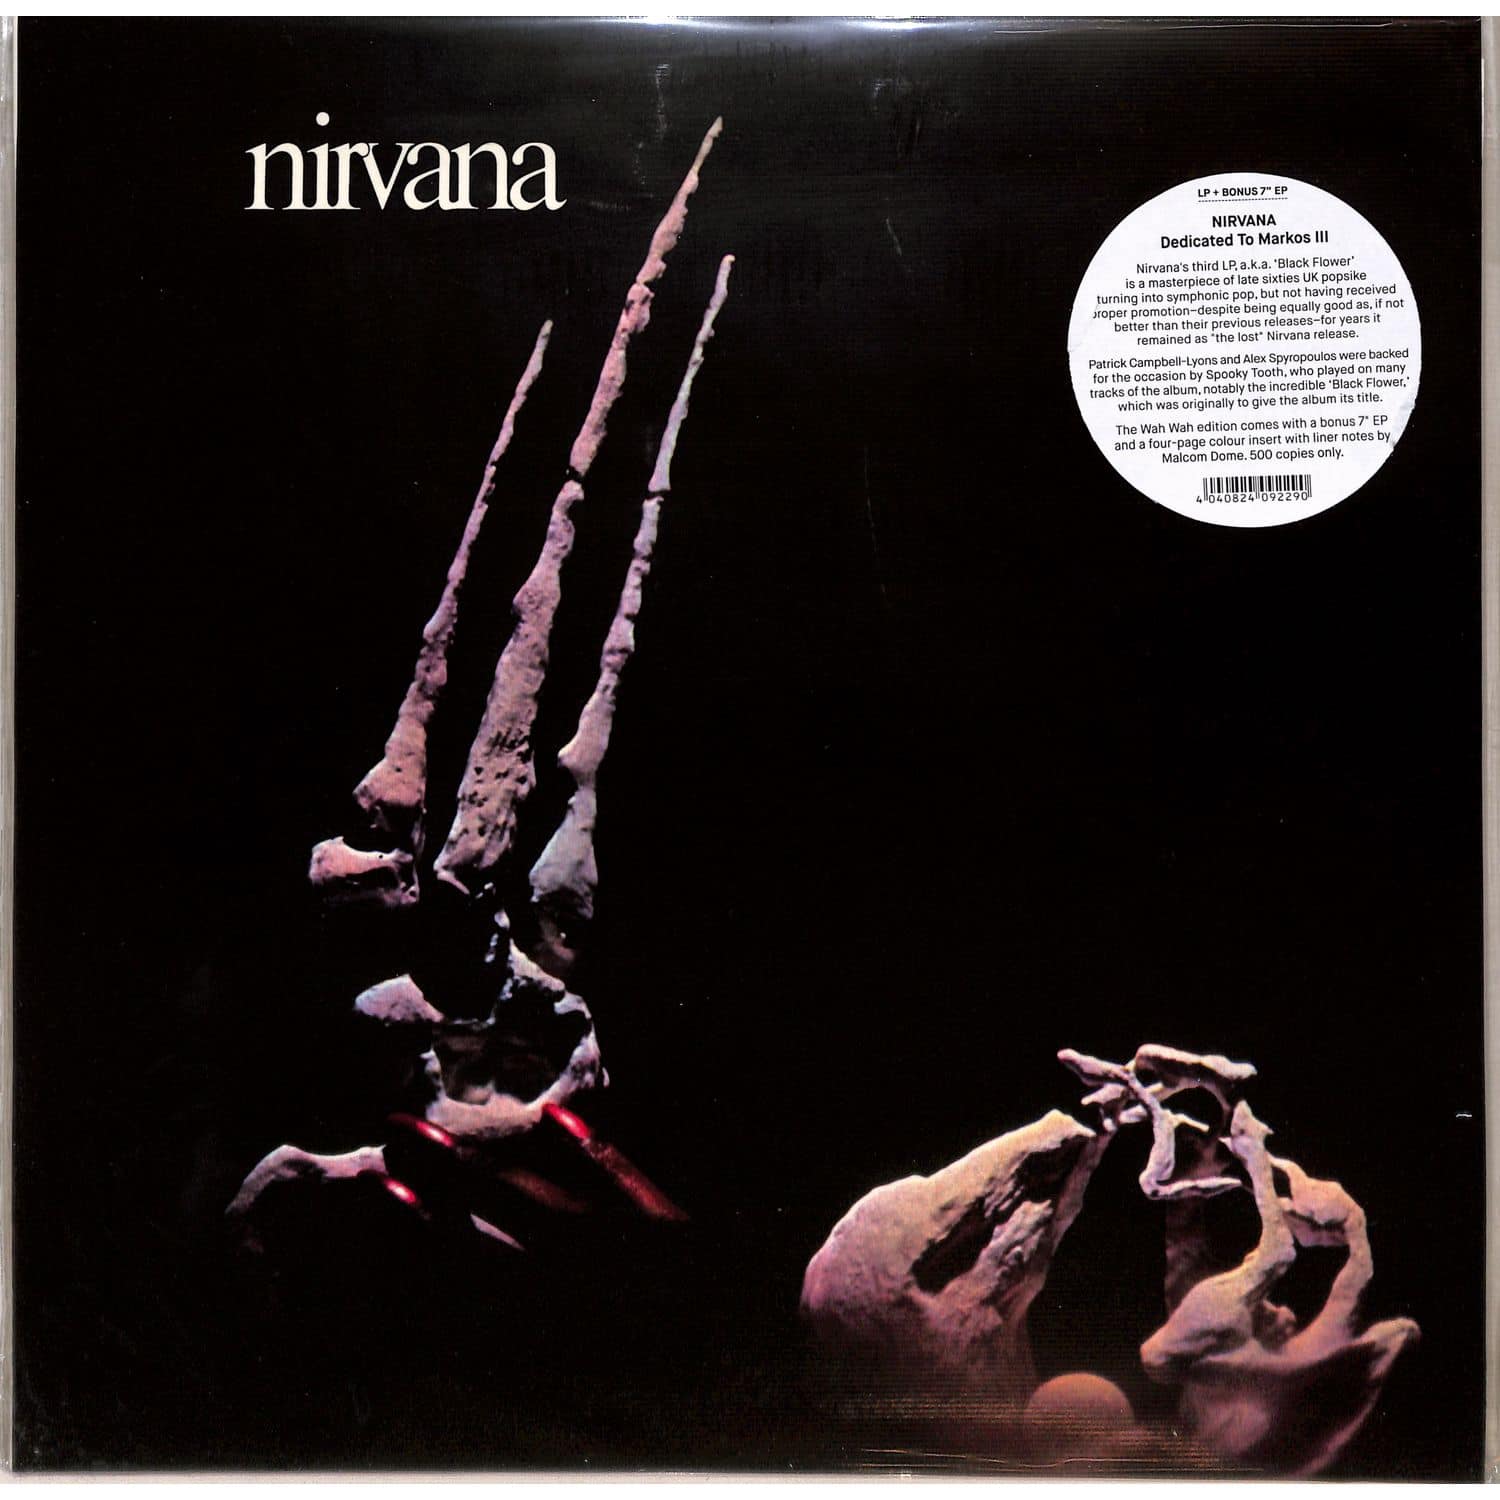 Nirvana - TO MARKOS III 